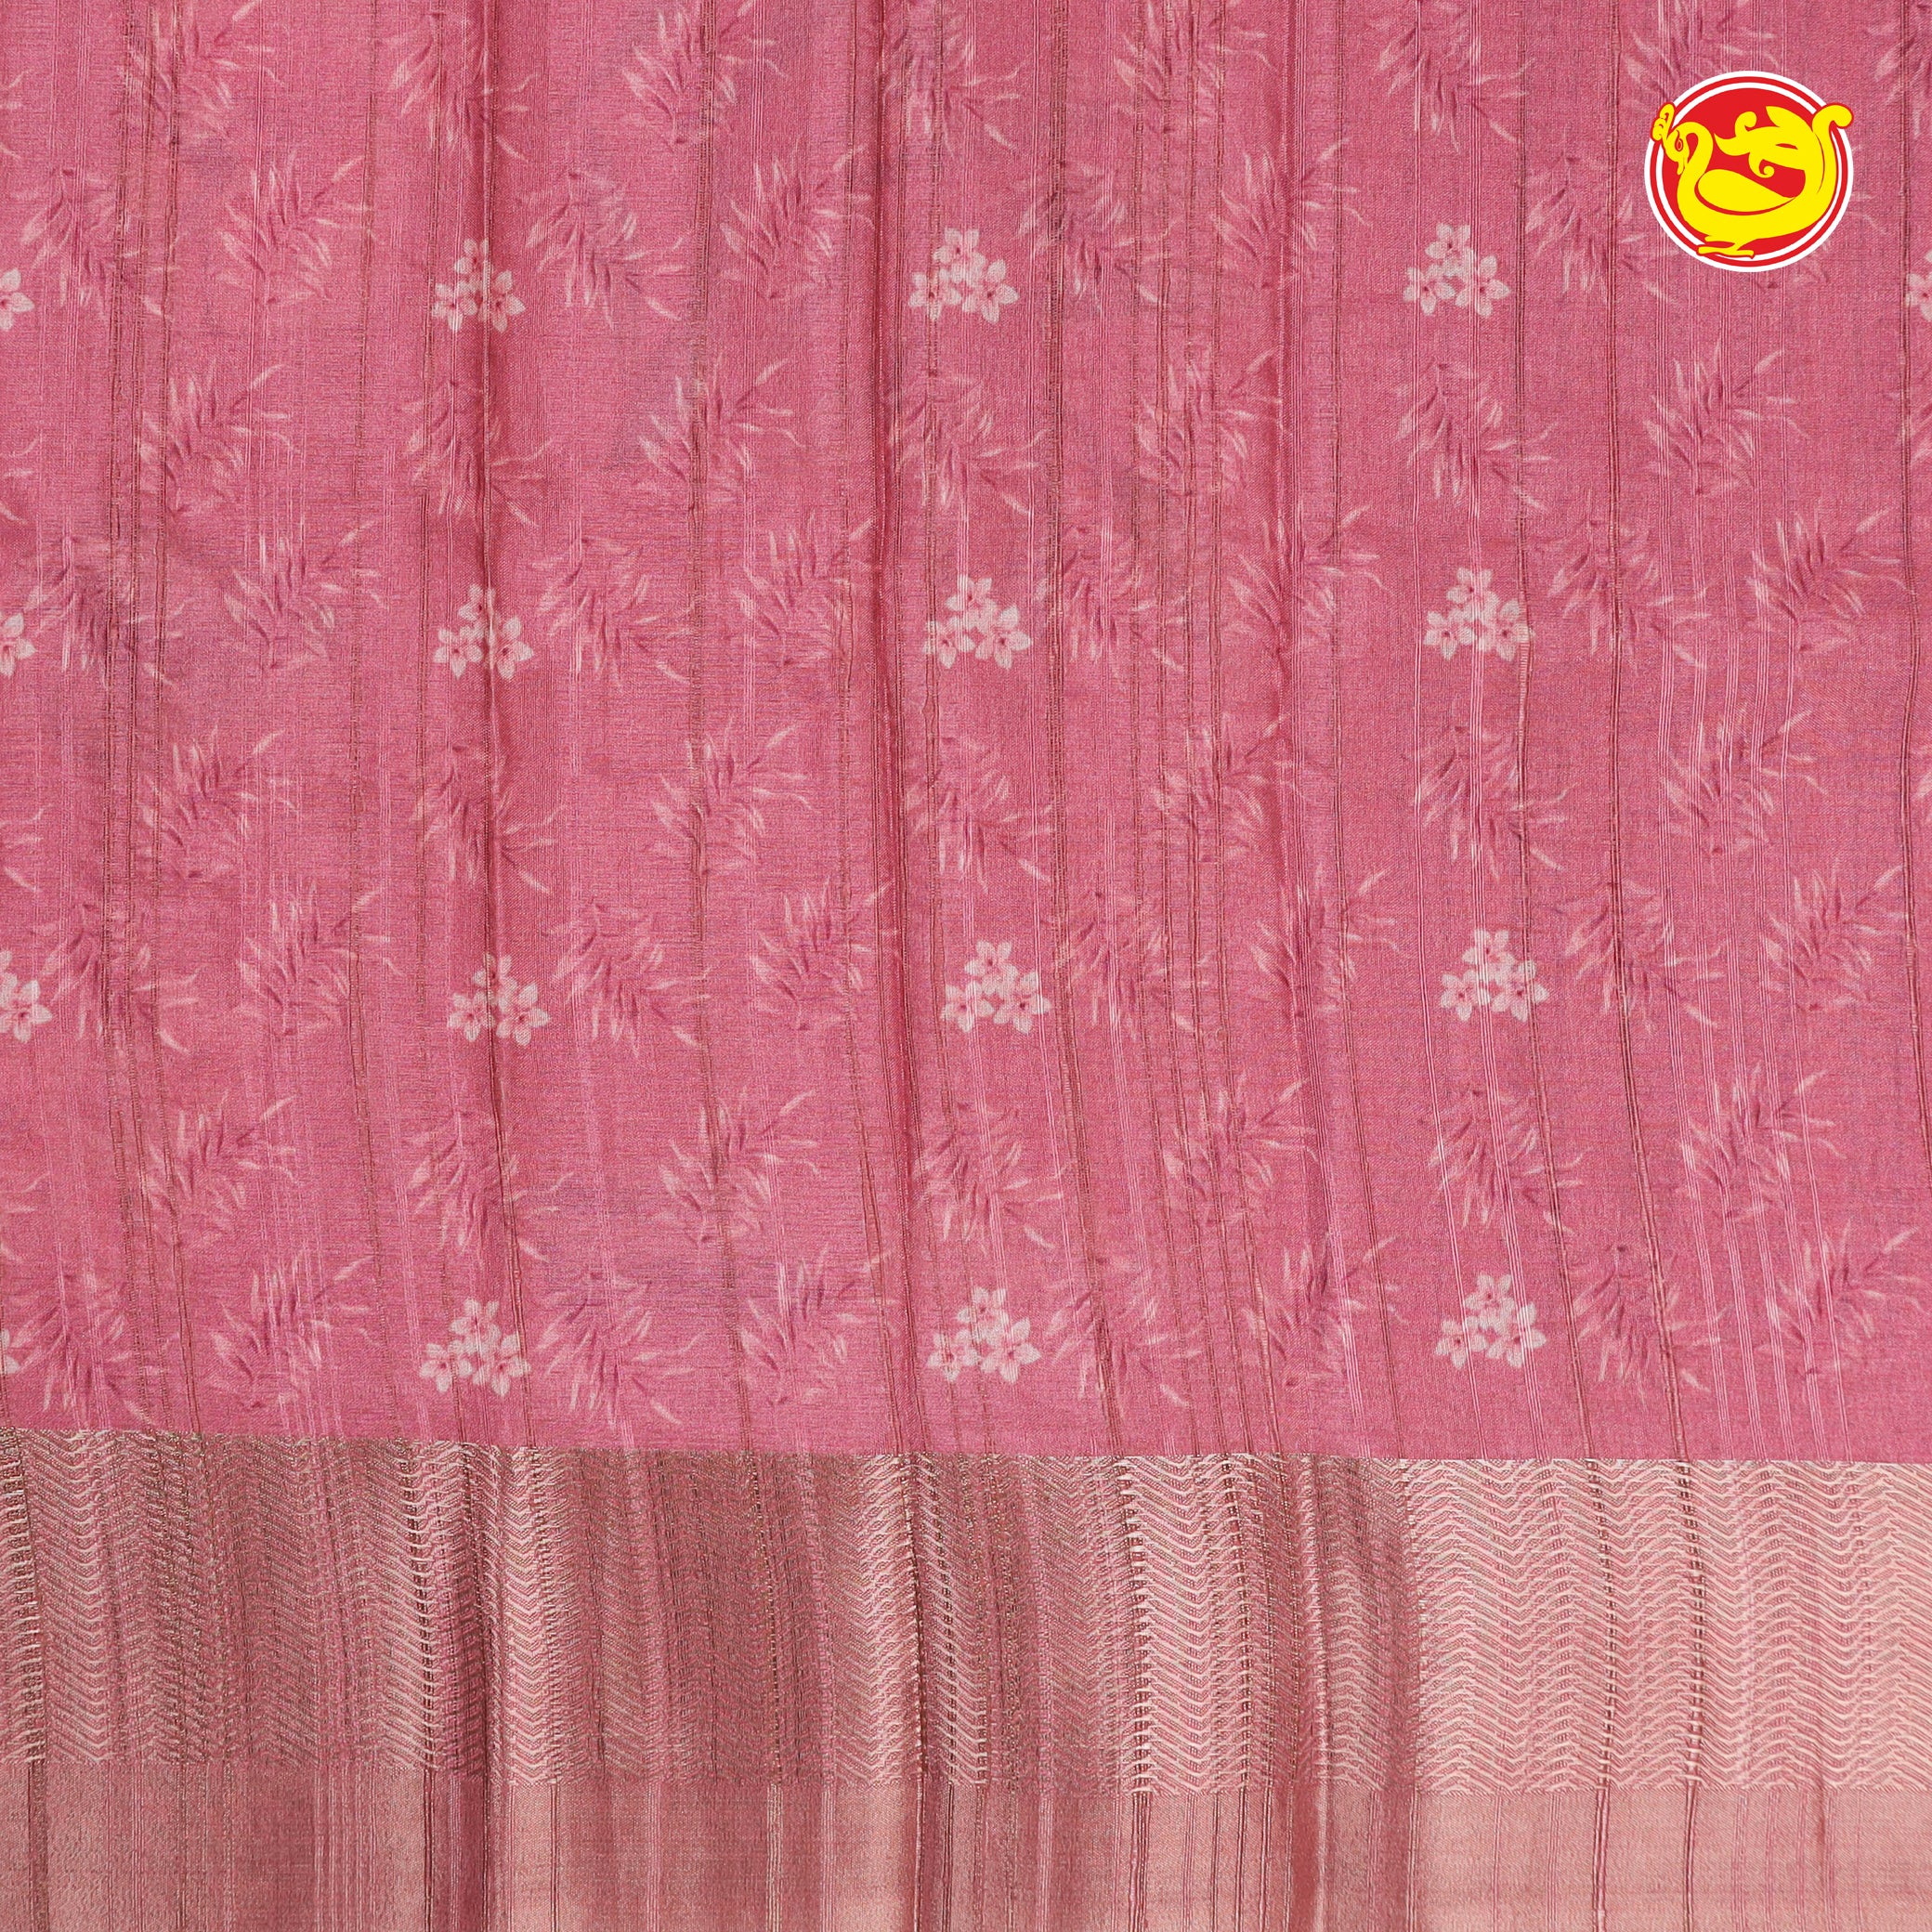 Light pink art tussar saree with digital prints